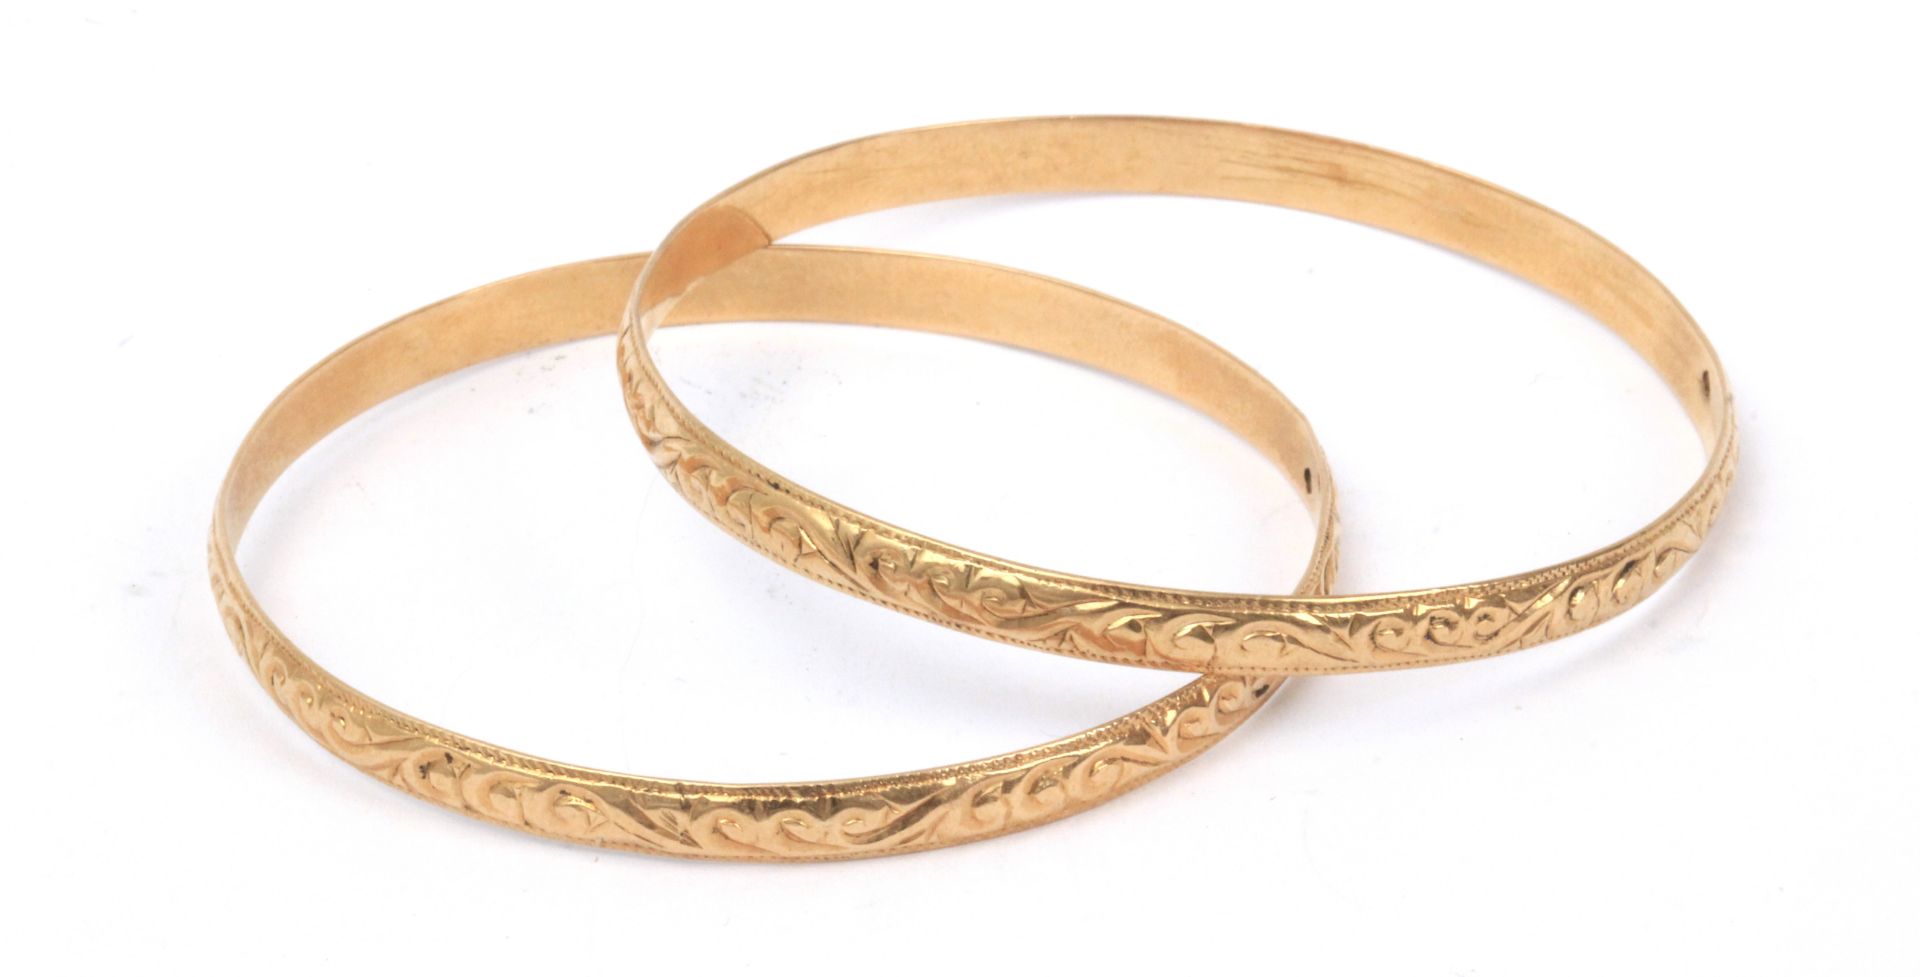 A pair of 18k. gold bangles circa 1930